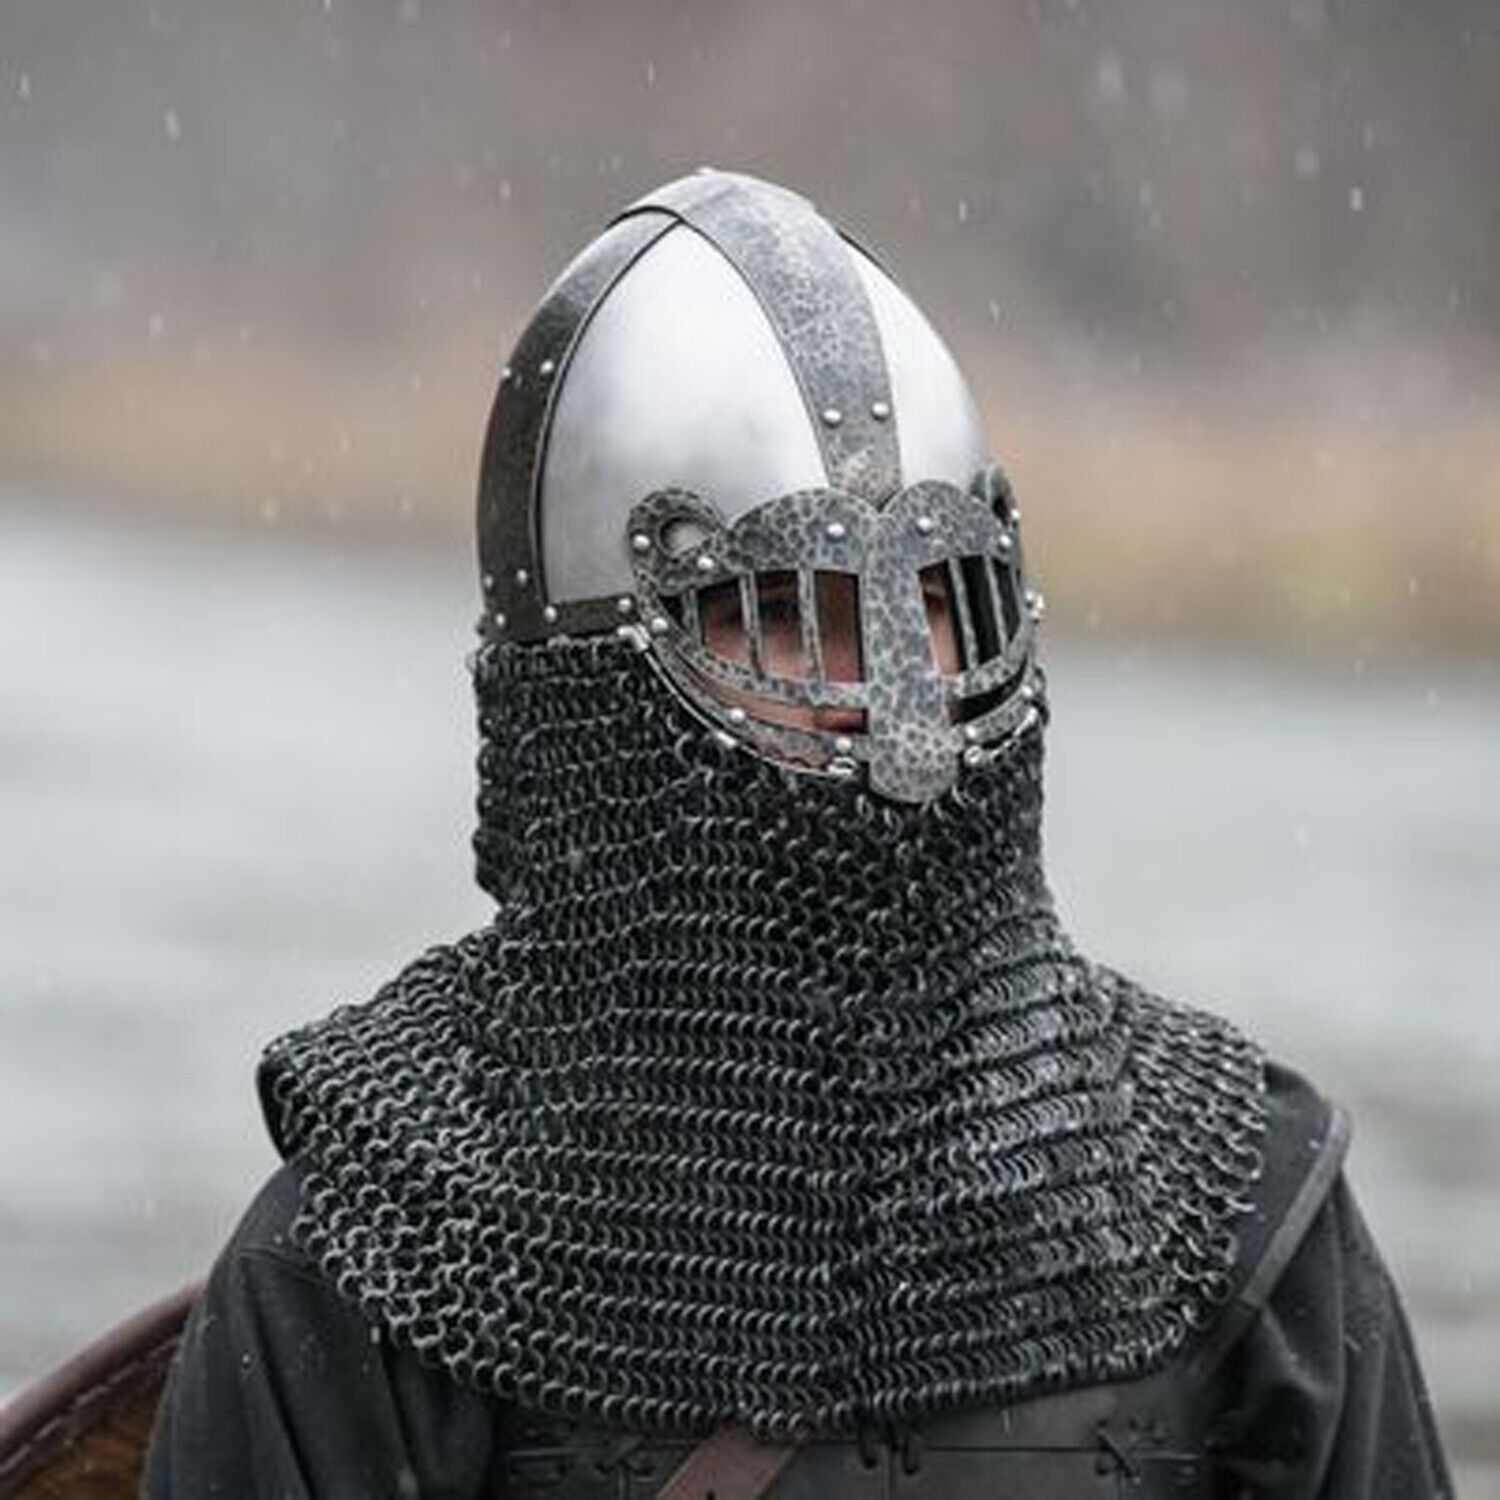 Medieval Bascinet Viking Style Helmet 16 Gauge Helmet With Chain mail